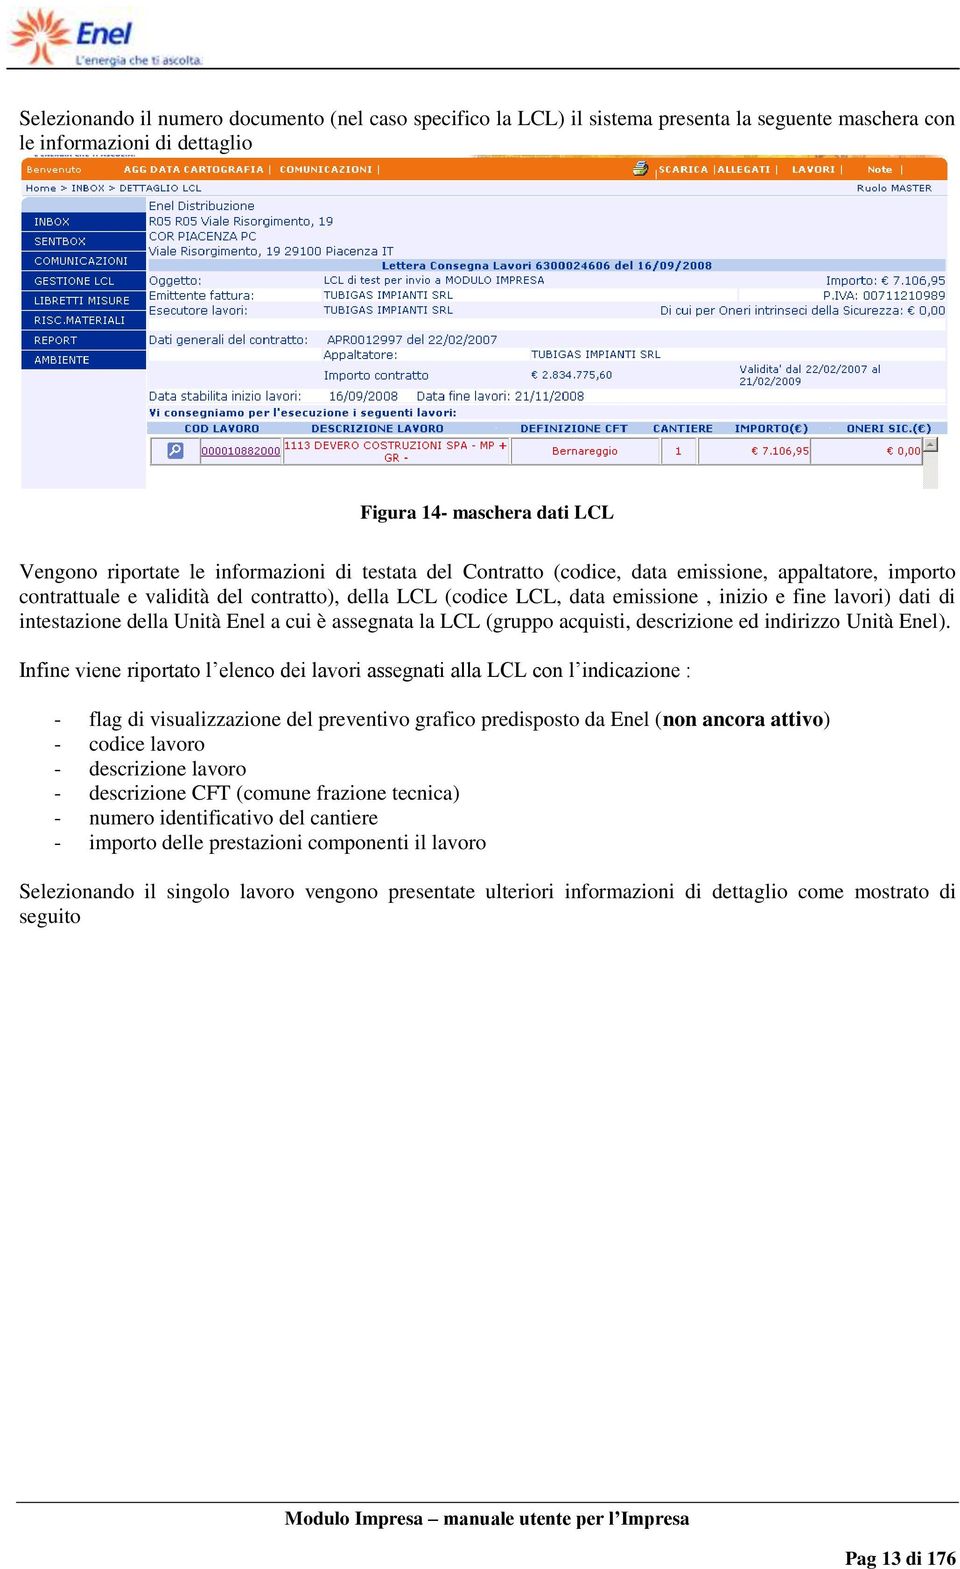 Unità Enel a cui è assegnata la LCL (gruppo acquisti, descrizione ed indirizzo Unità Enel).